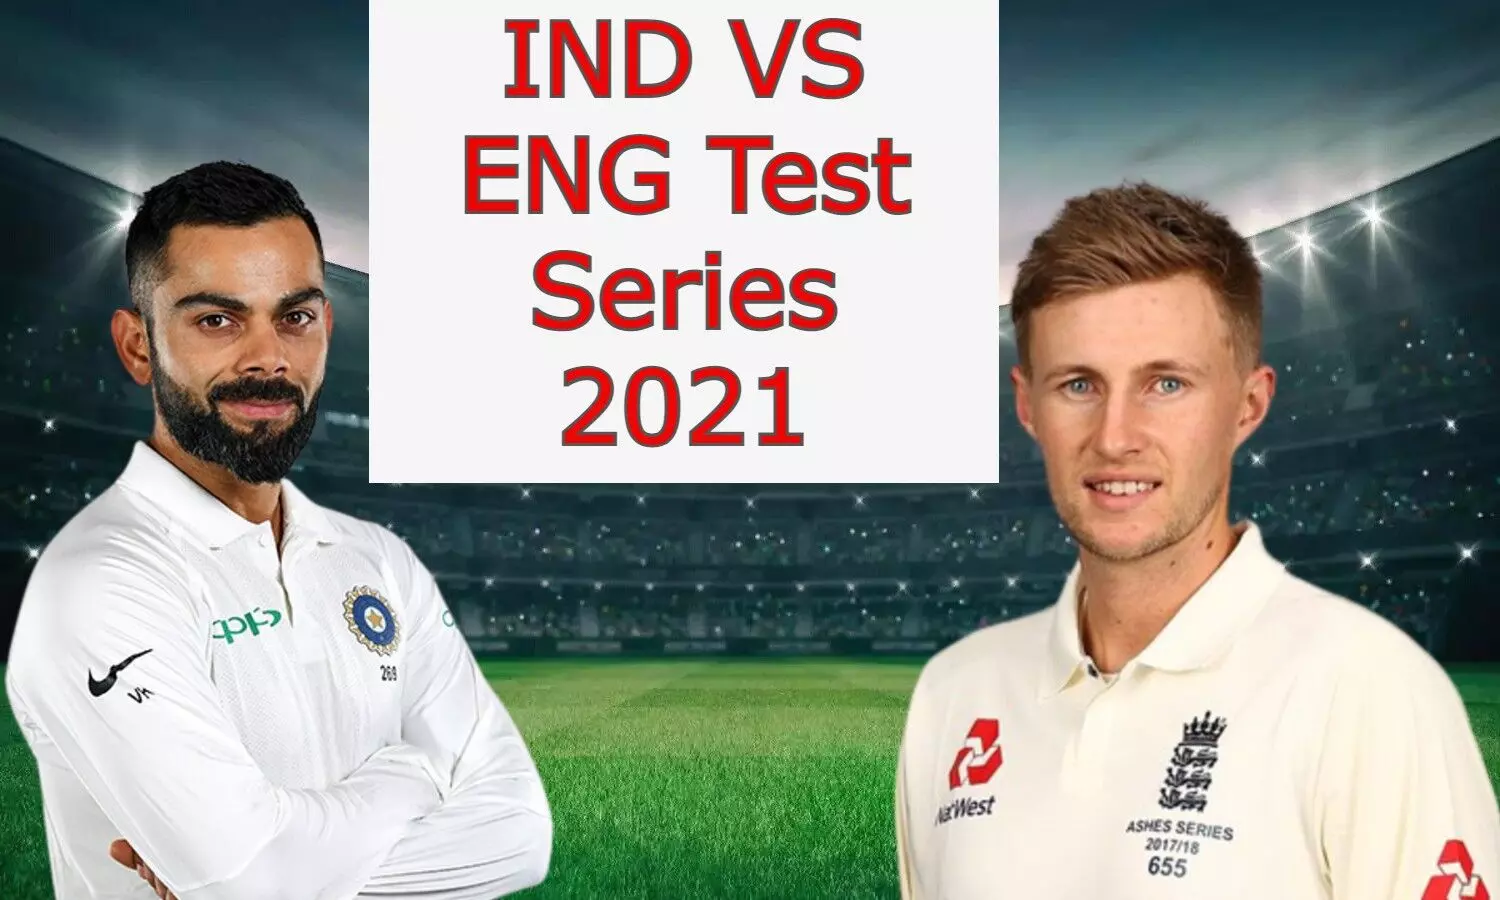 IND VS ENG Fouth Test: आज से शुरू होगा सीरीज का चौथा टेस्ट, इन खिलाड़ियों को मिल सकती है Playing XI में जगह